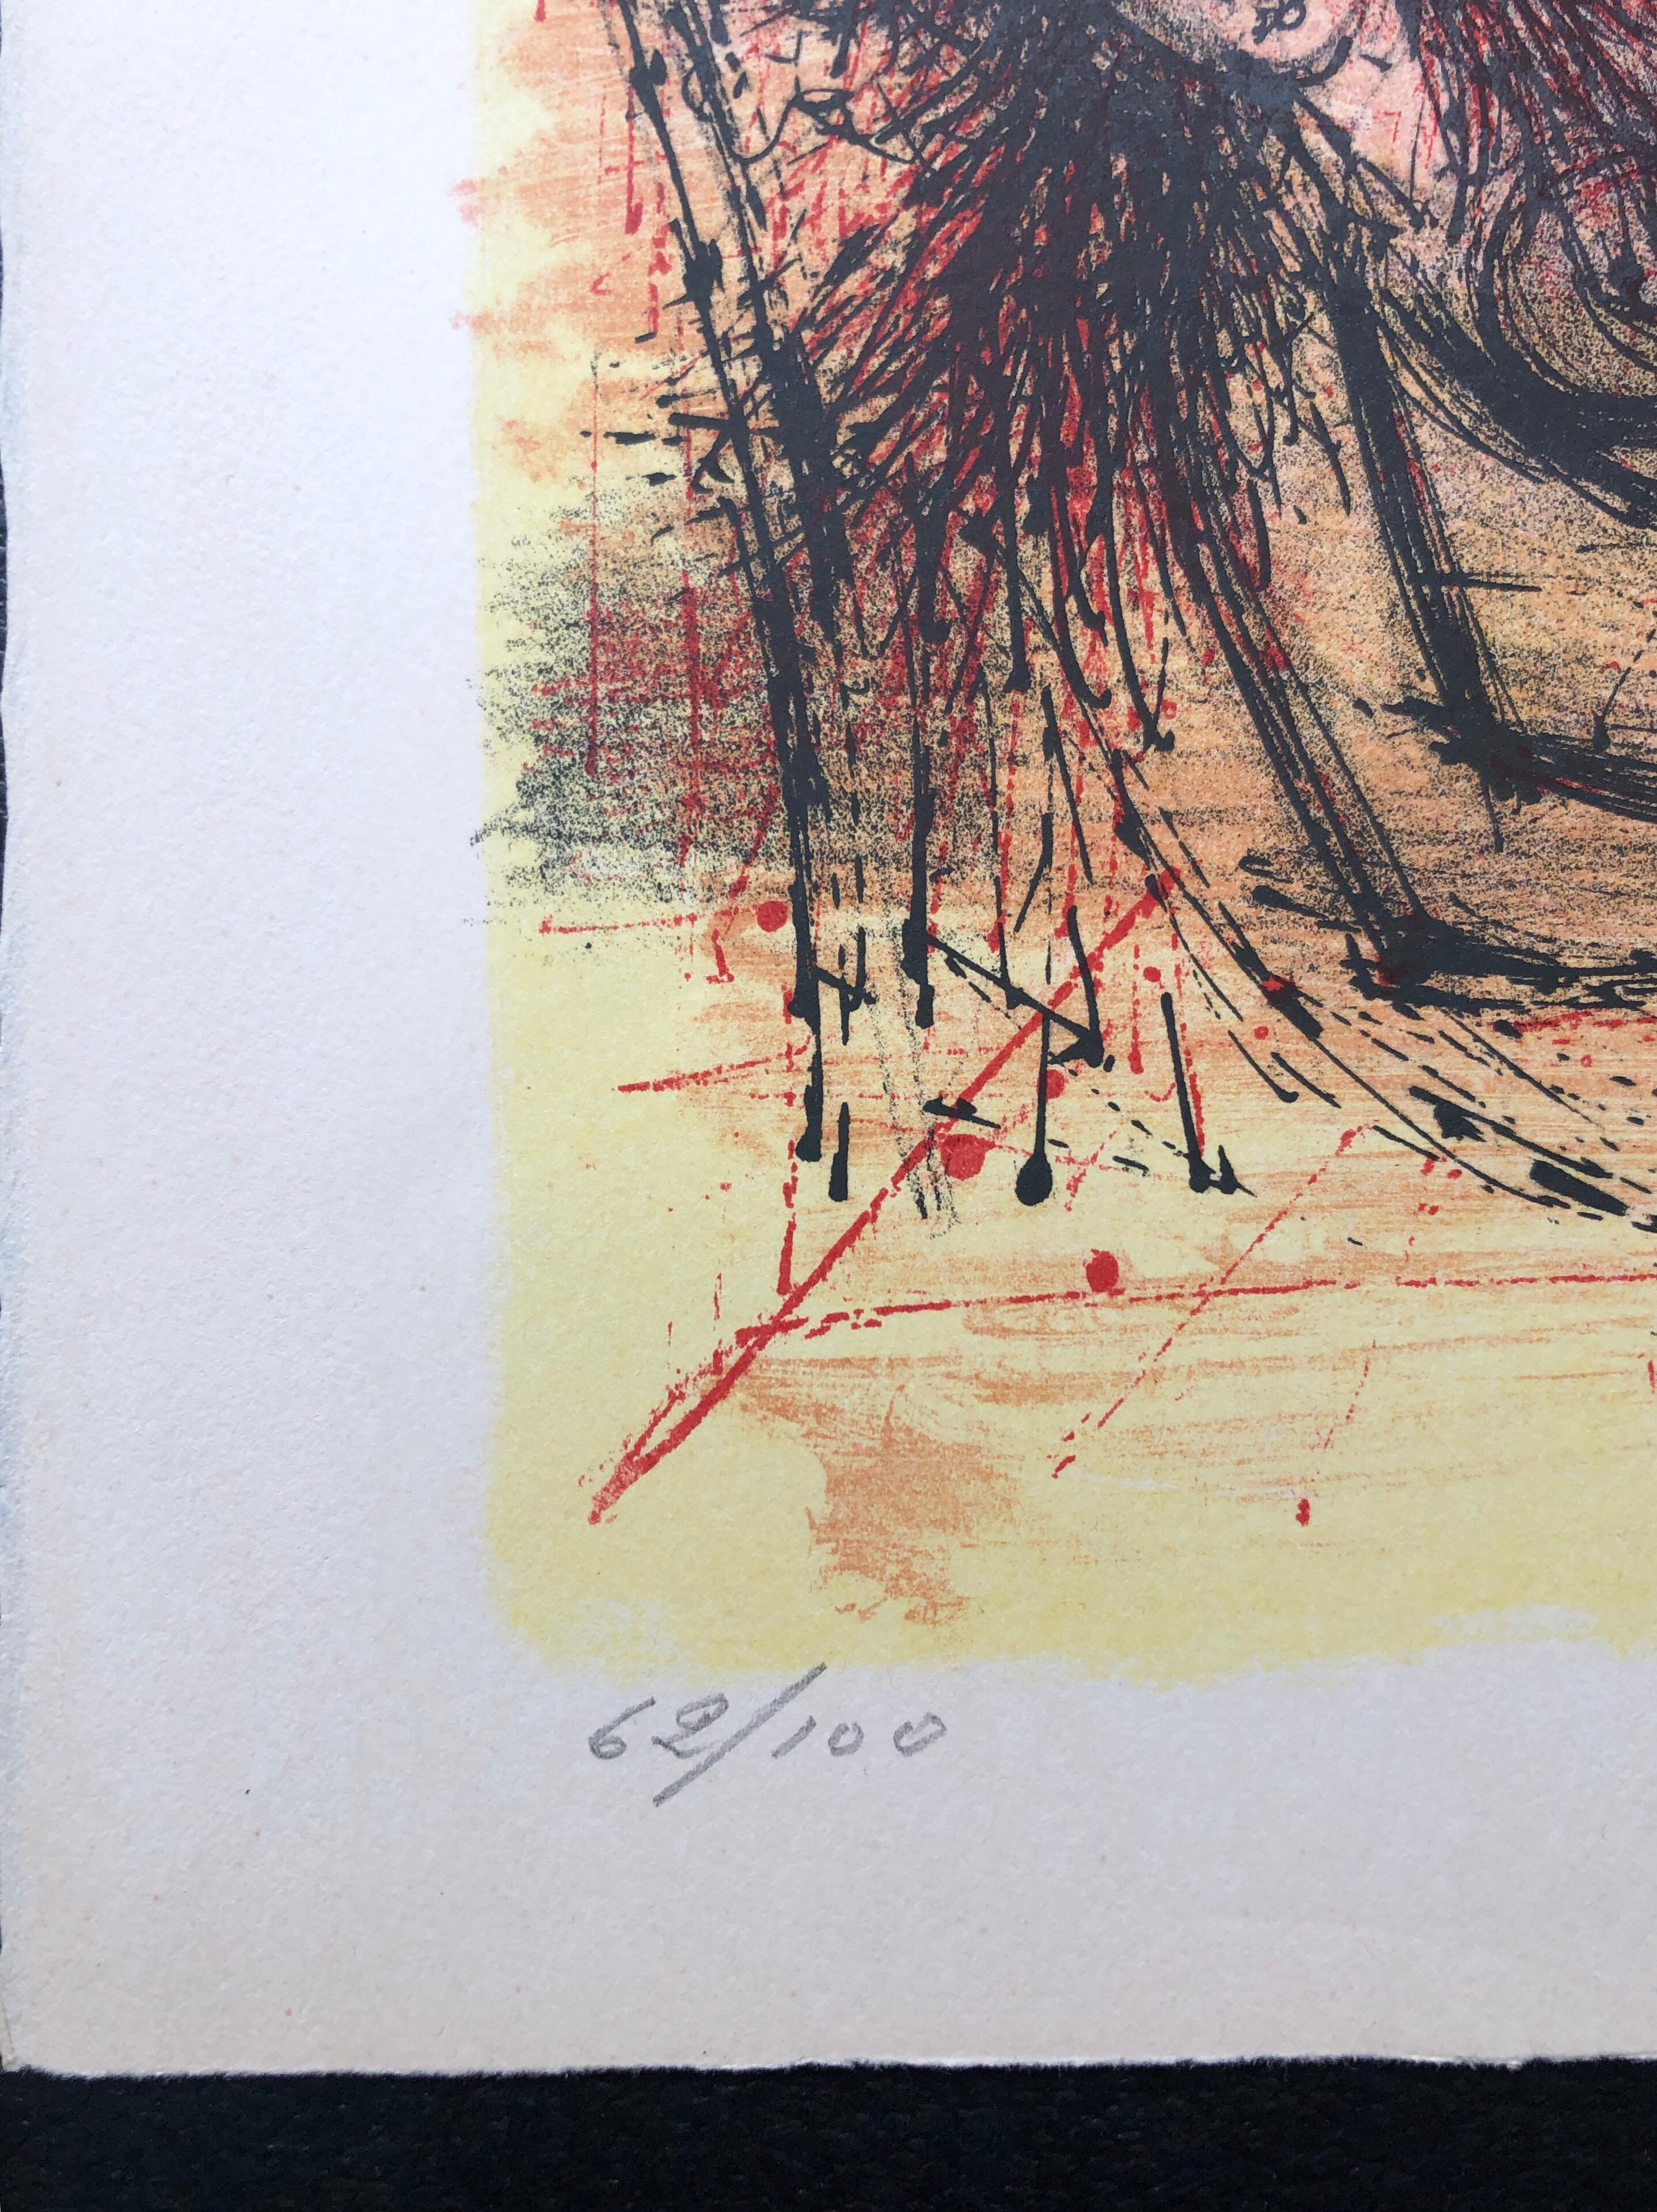 Es handelt sich um eine mit Bleistift handsignierte, limitierte Auflage einer modernen Lithografie, die 1968 in der Schweiz auf französischem Rives-Kunstdruckpapier in leuchtenden Rot-, Gelb- und Orangetönen gedruckt wurde. Es zeigt eine nackte